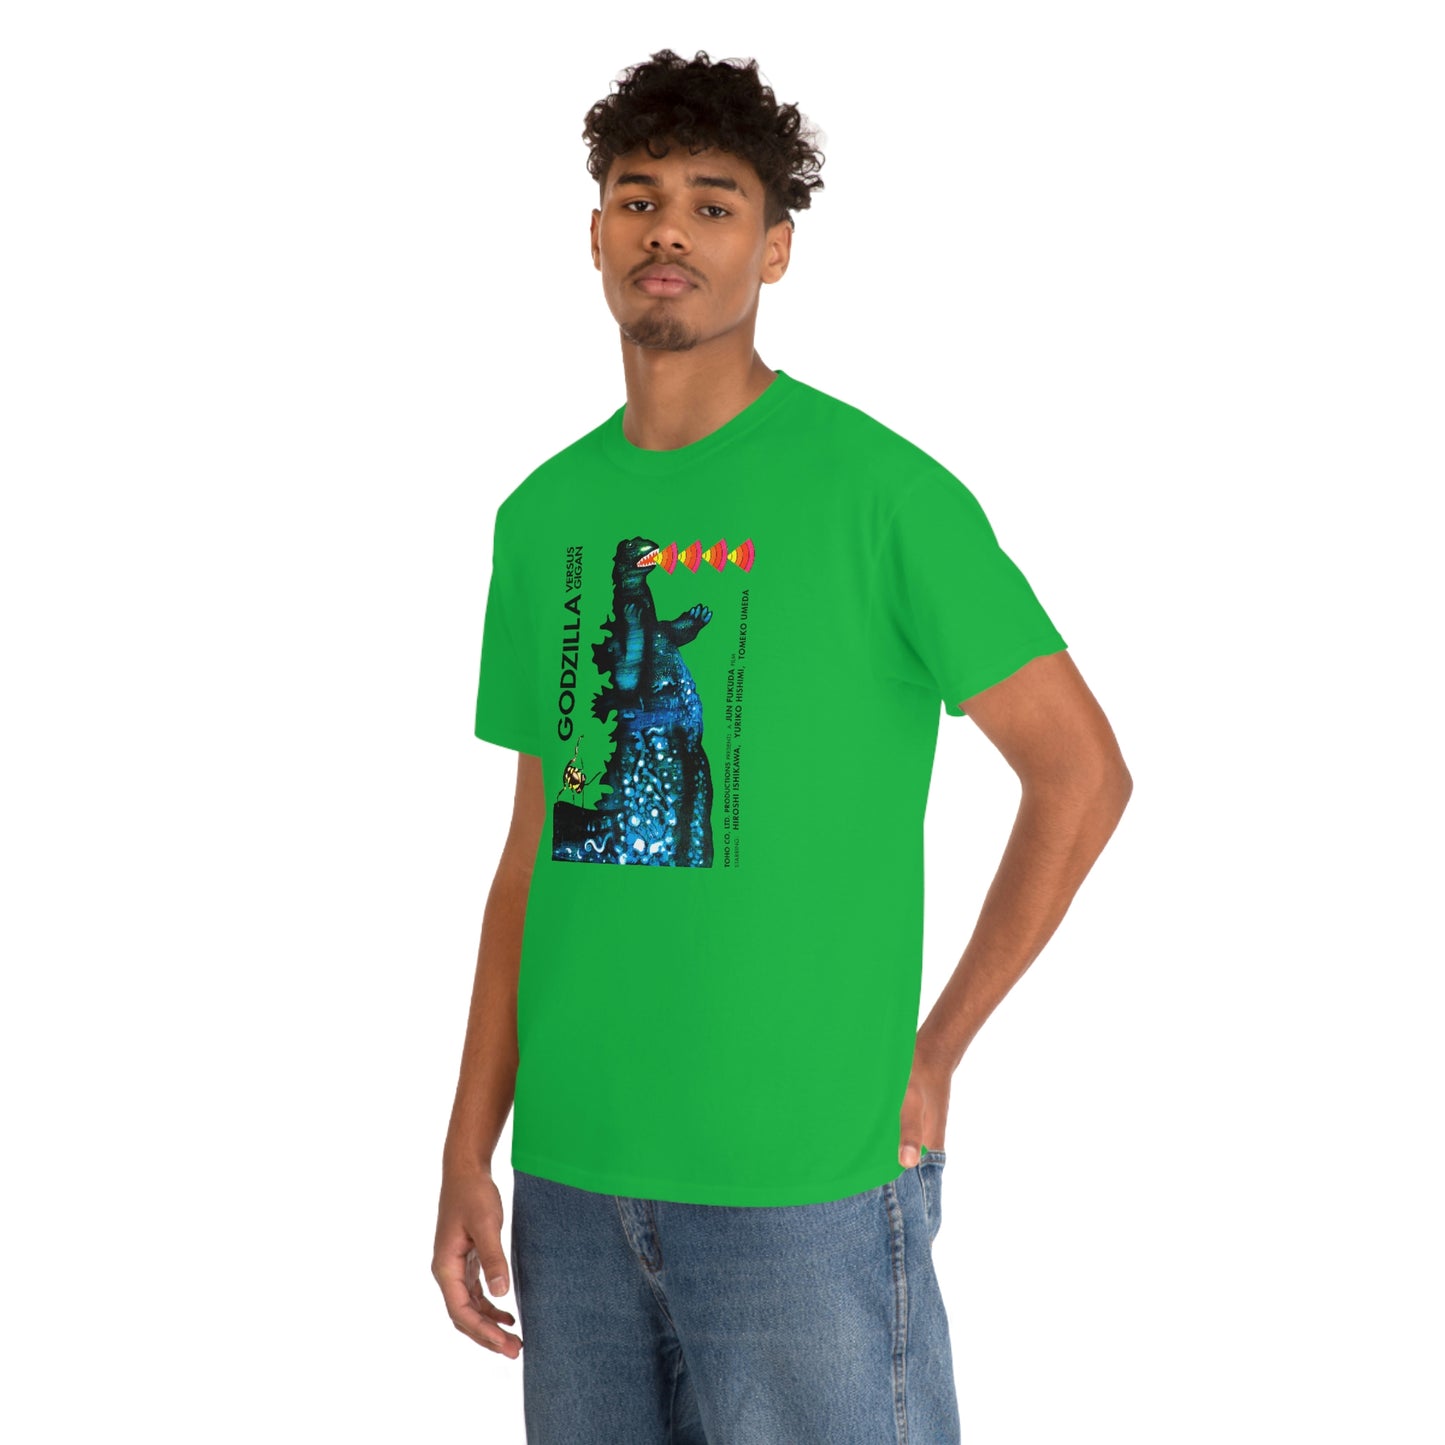 Godzilla Vs. Gigan T-Shirt